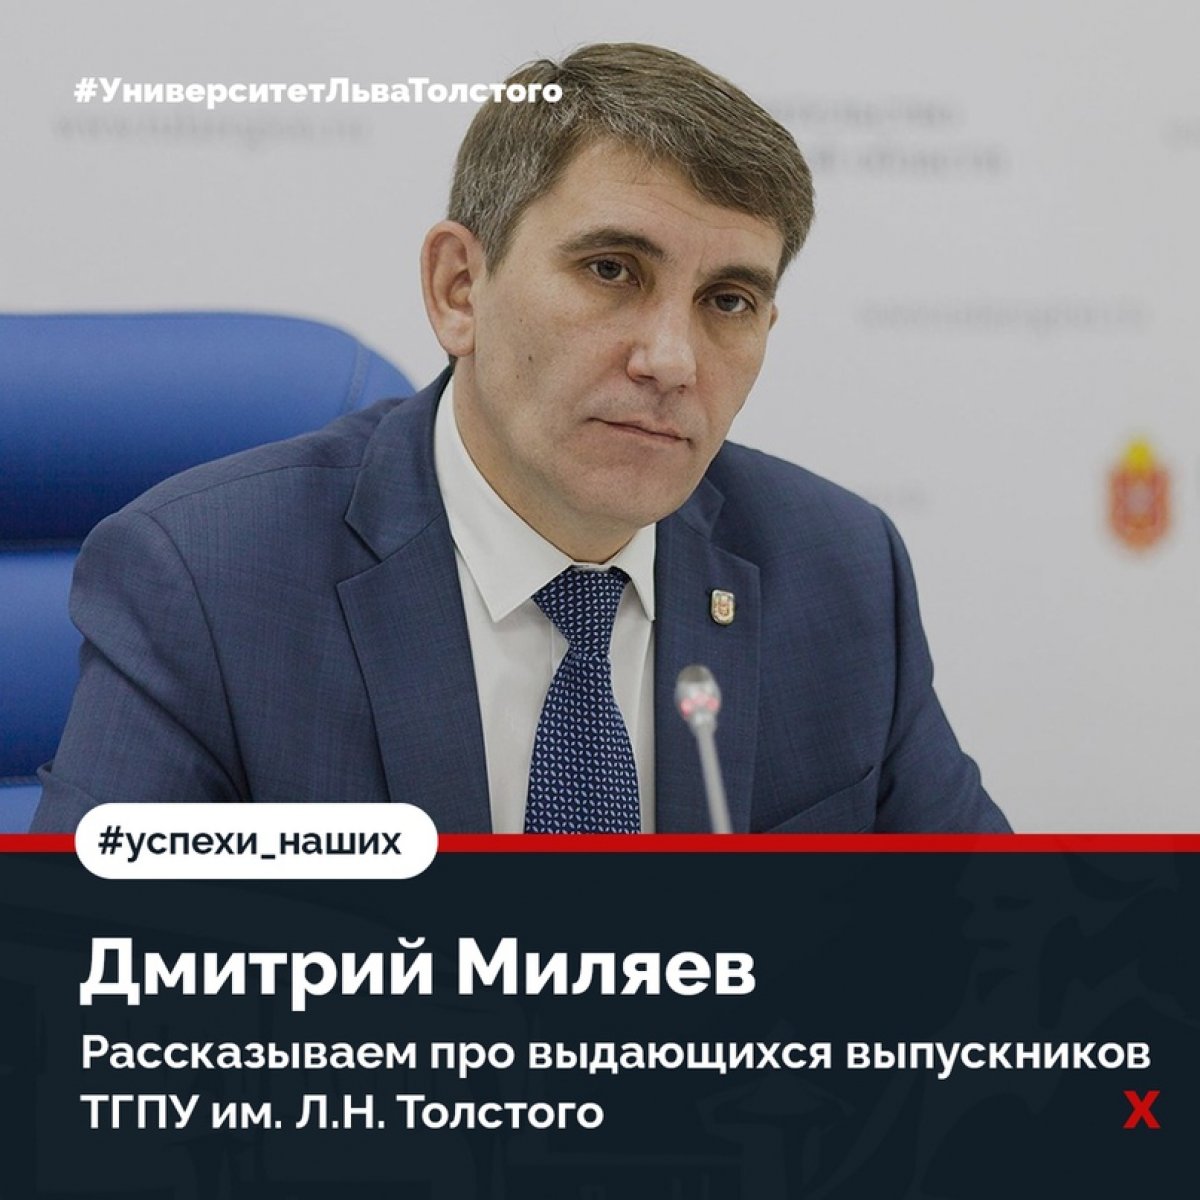 Сегодня в рубрике – глава администрации города Тулы Дмитрий Миляев 👍🏻